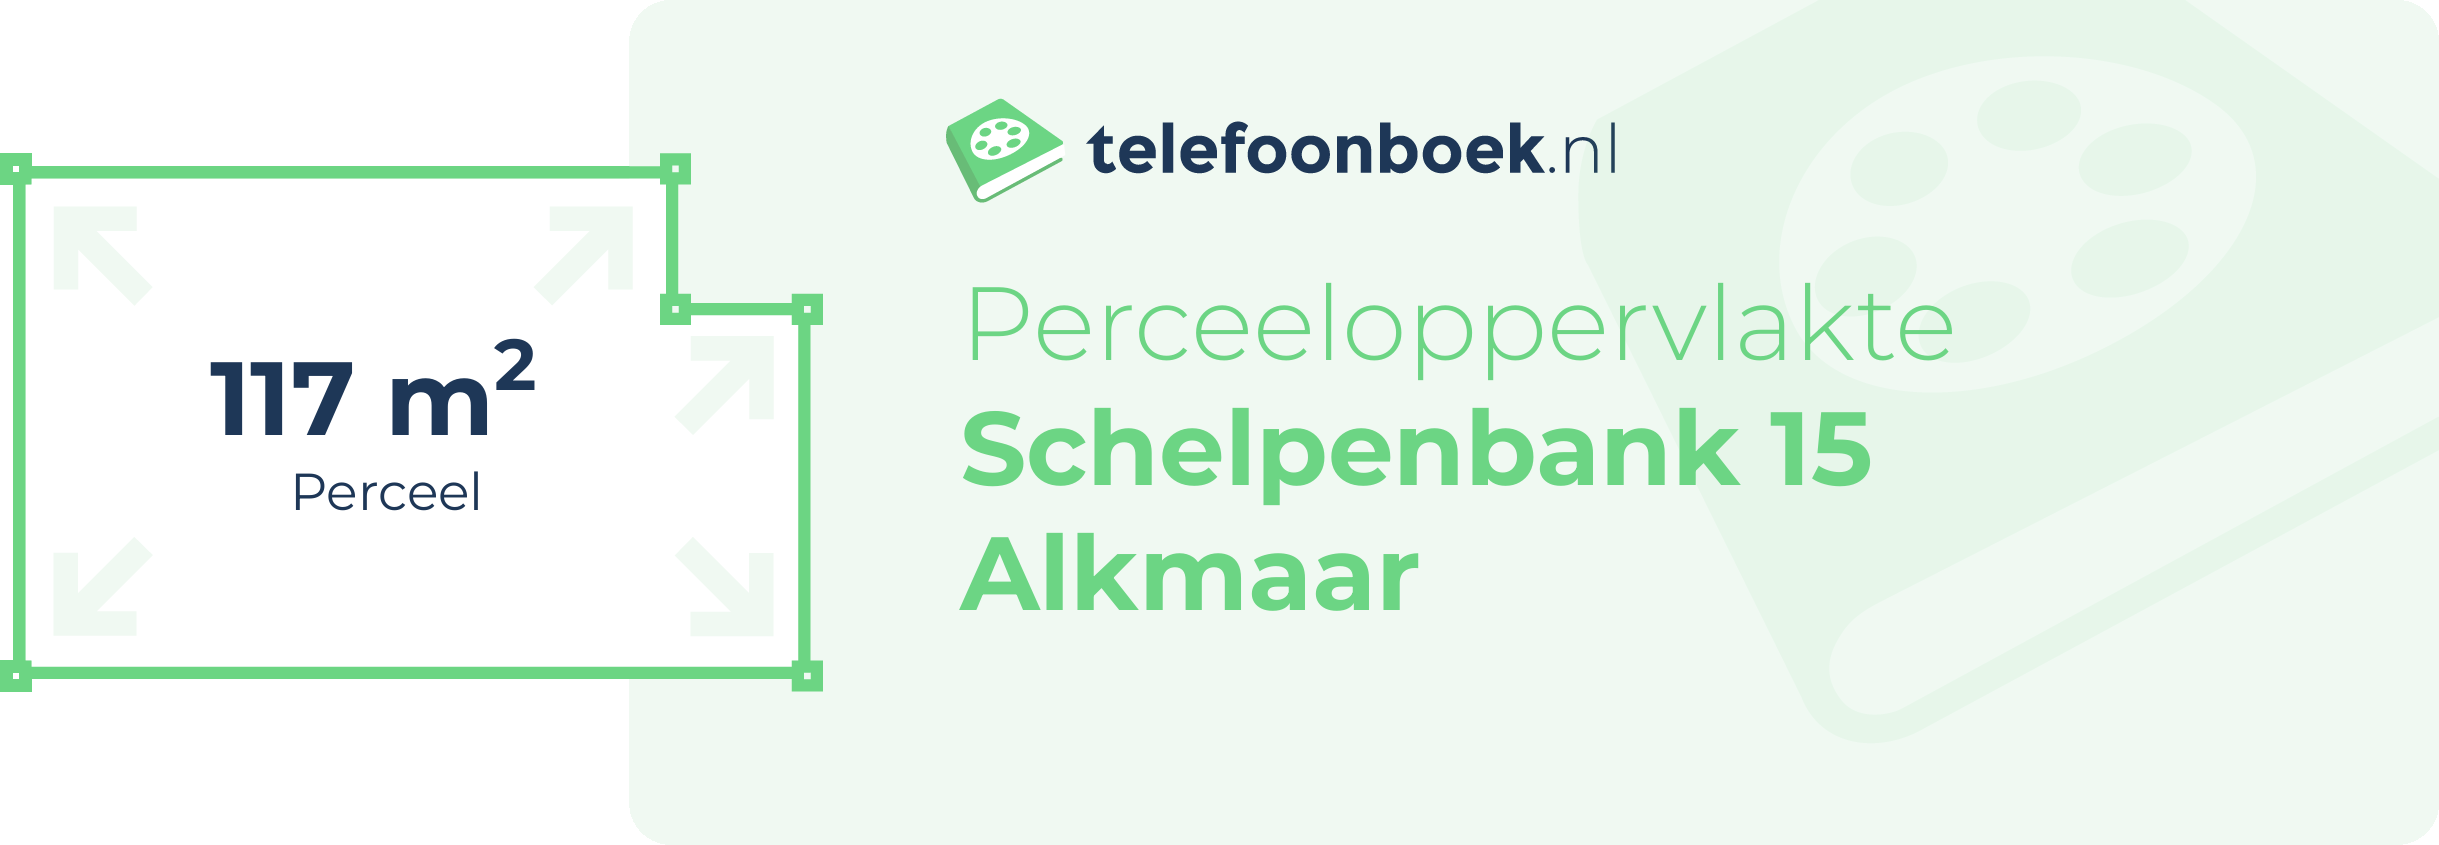 Perceeloppervlakte Schelpenbank 15 Alkmaar